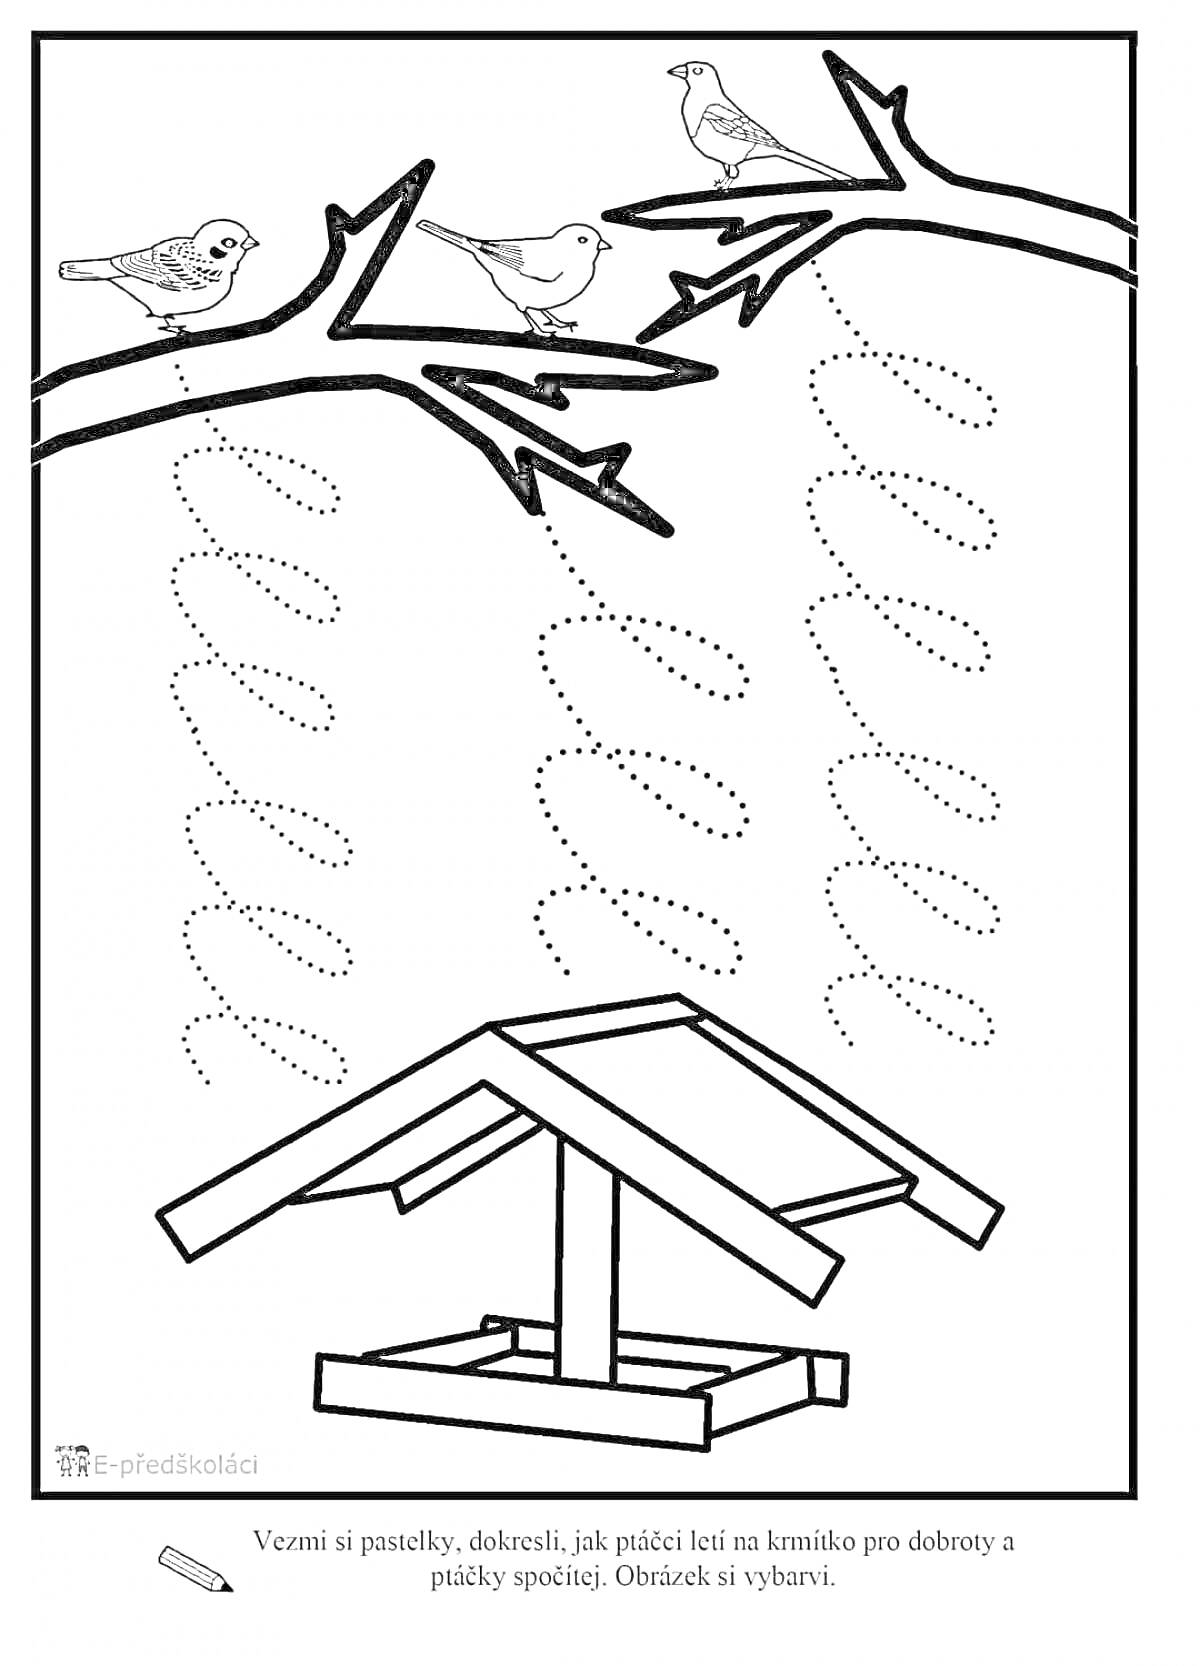 Раскраска Птичья кормушка на ветке, три птицы, ветка, кормушка для птиц, пунктирные линии для рисования